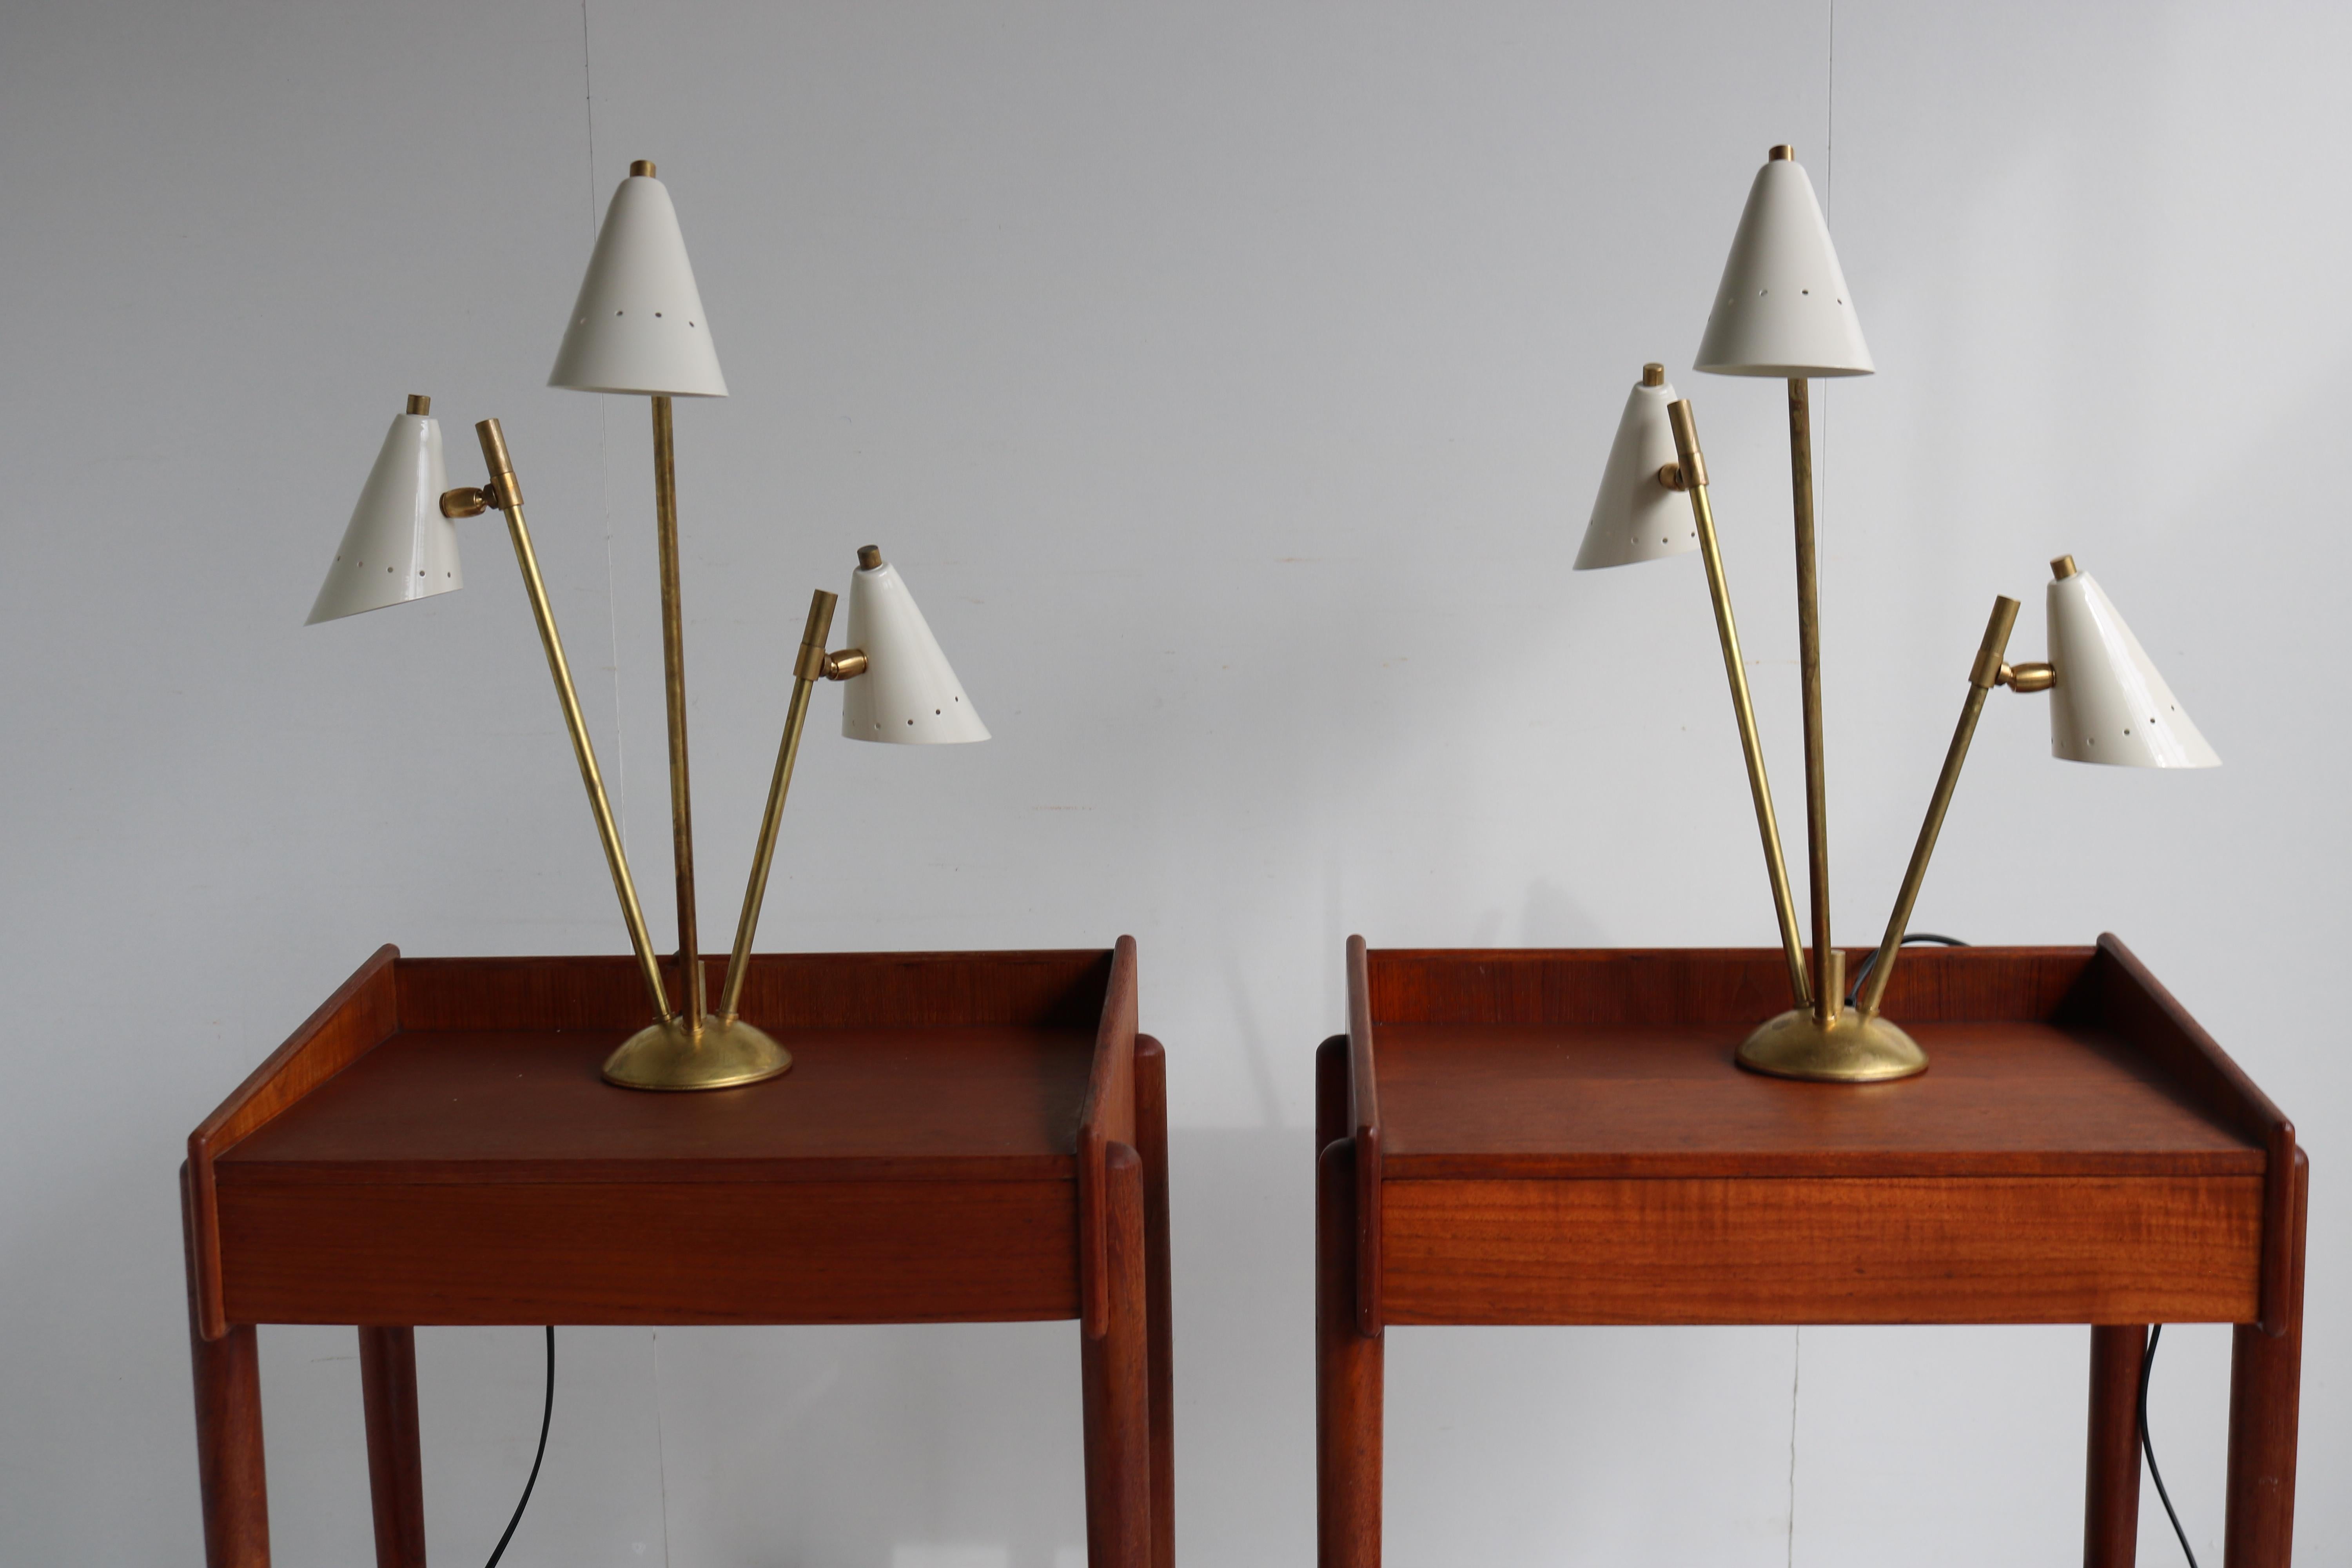 Wunderschönes Paar italienischer Tischlampen/Leuchten im Stil von Stilnovo aus dem Jahr 1950. 
Gestell aus patiniertem Messing mit weißen Metallschirmen. Die Schirme können in einem gewünschten Winkel eingestellt werden.
Sie lassen sich sehr gut mit